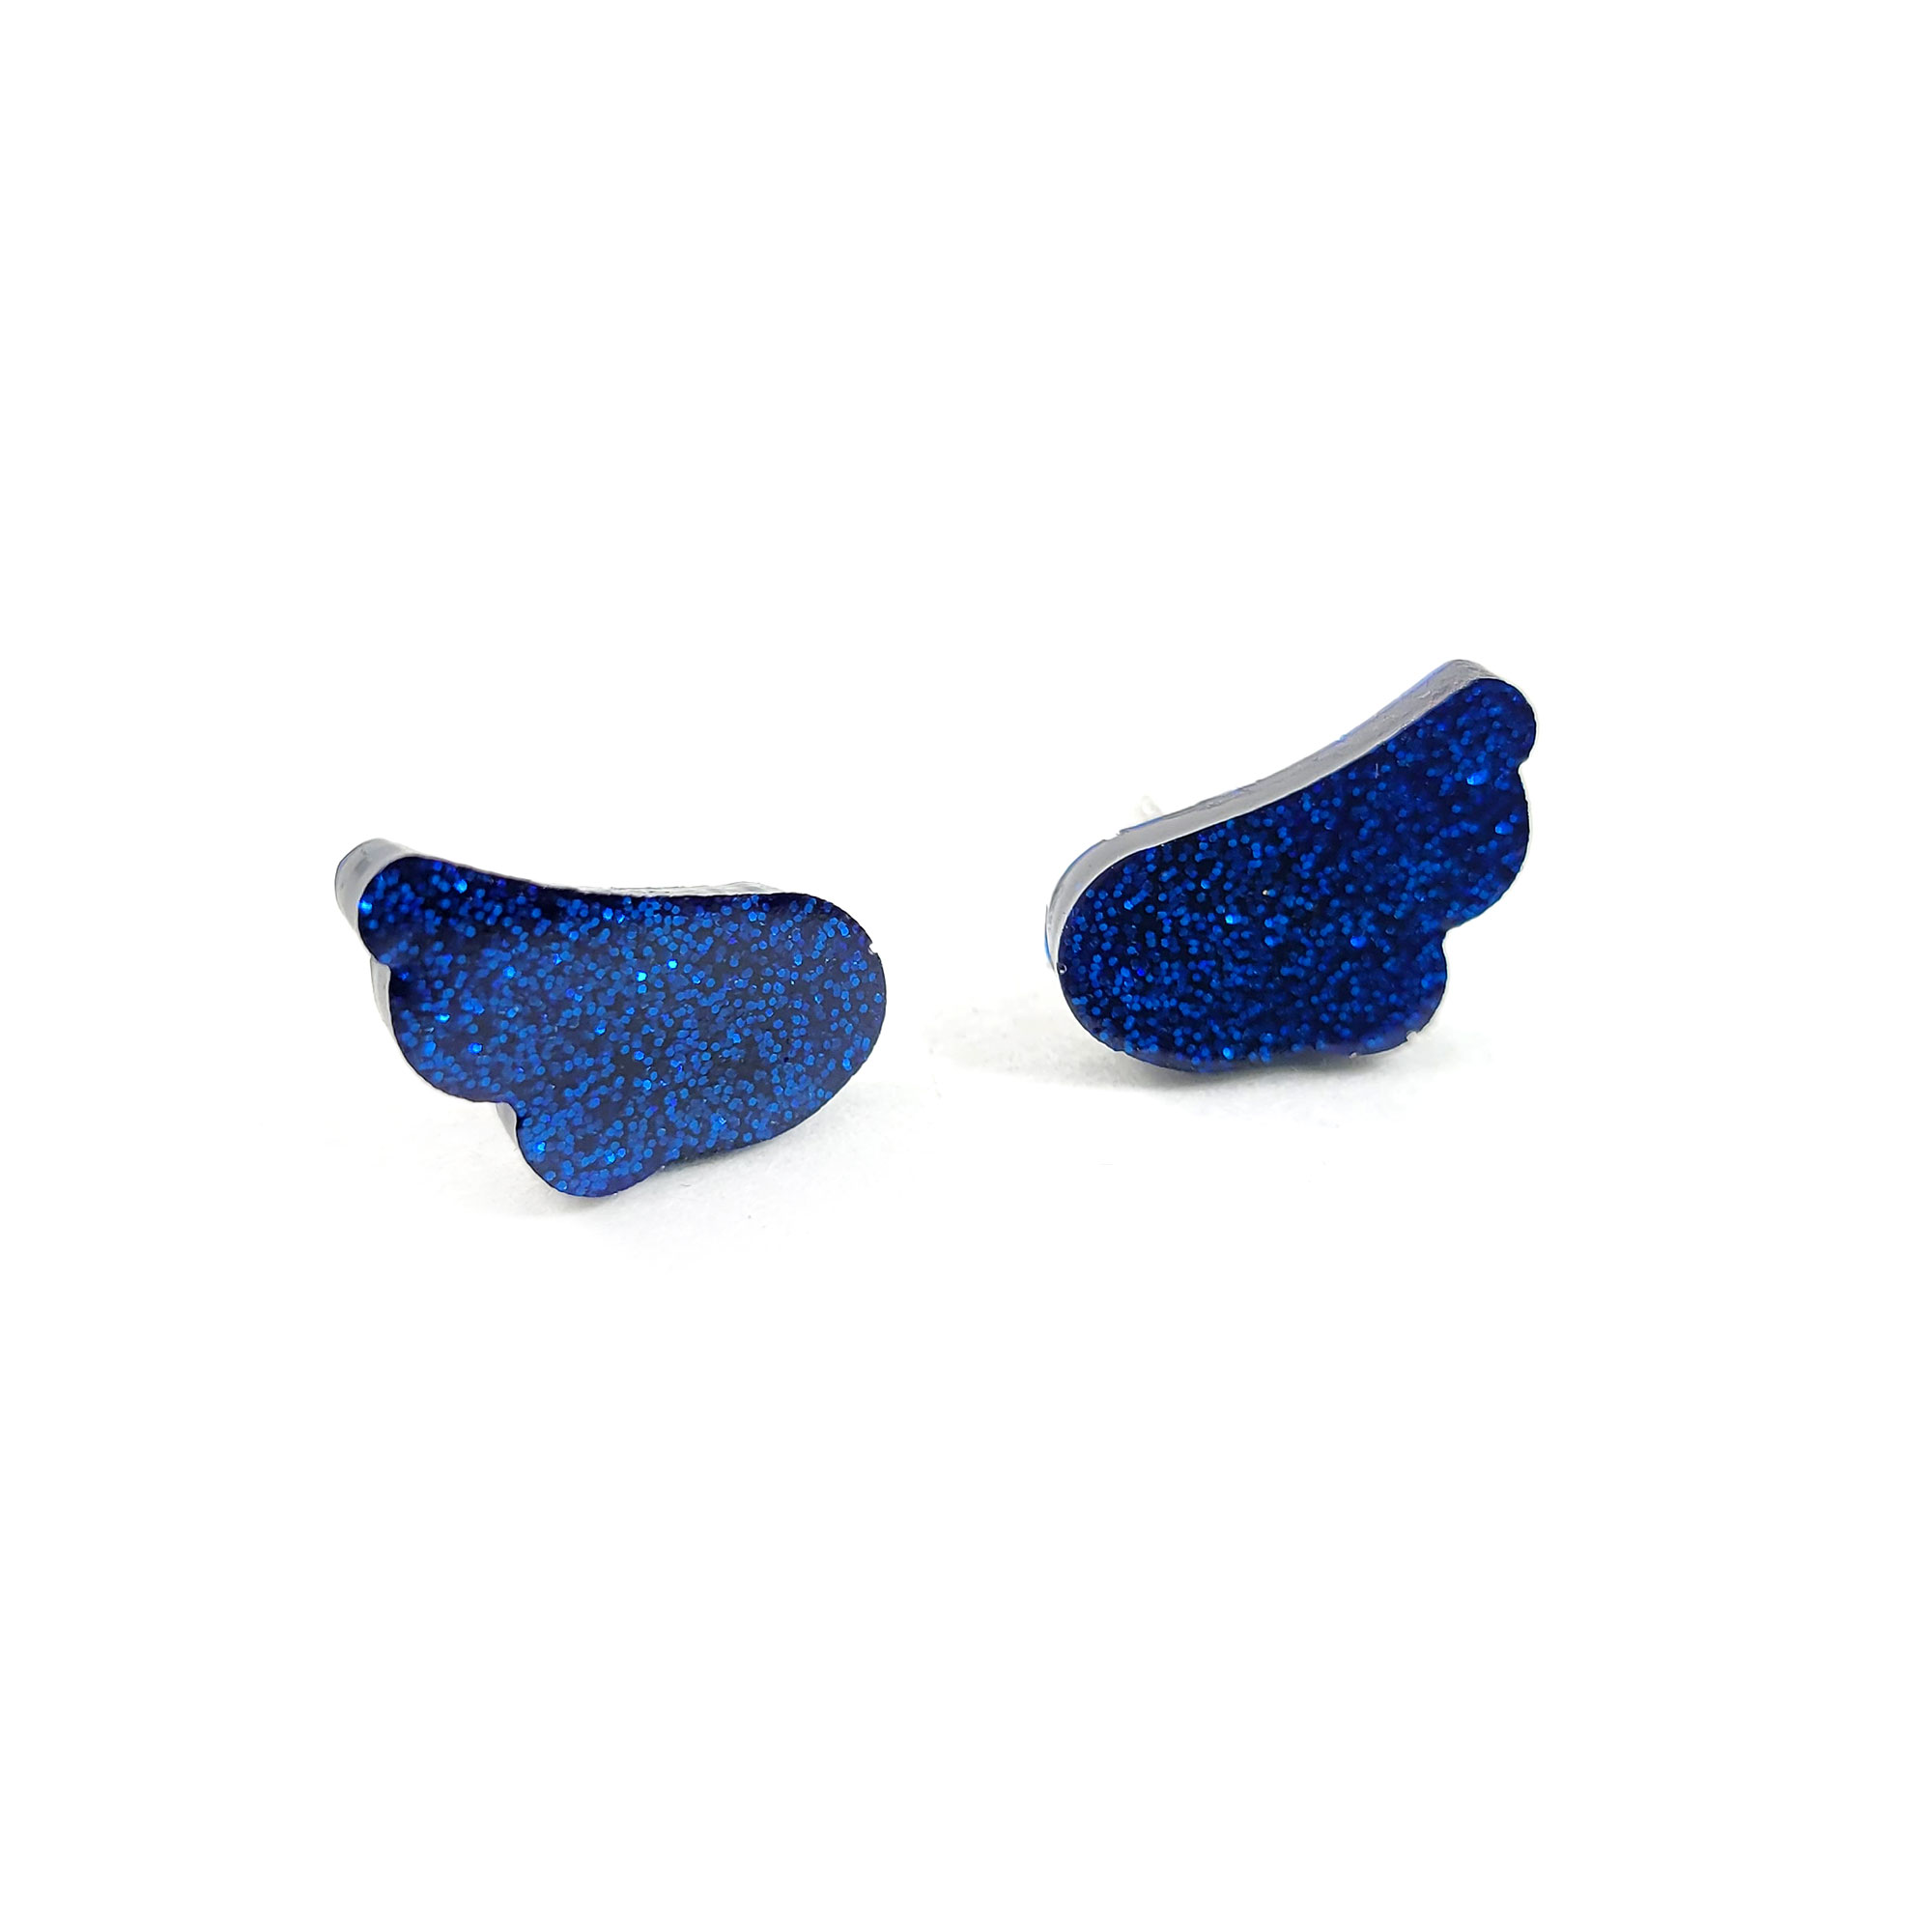 Cherub Angel Wing Earrings in Glittery Blue by Wilde Designs